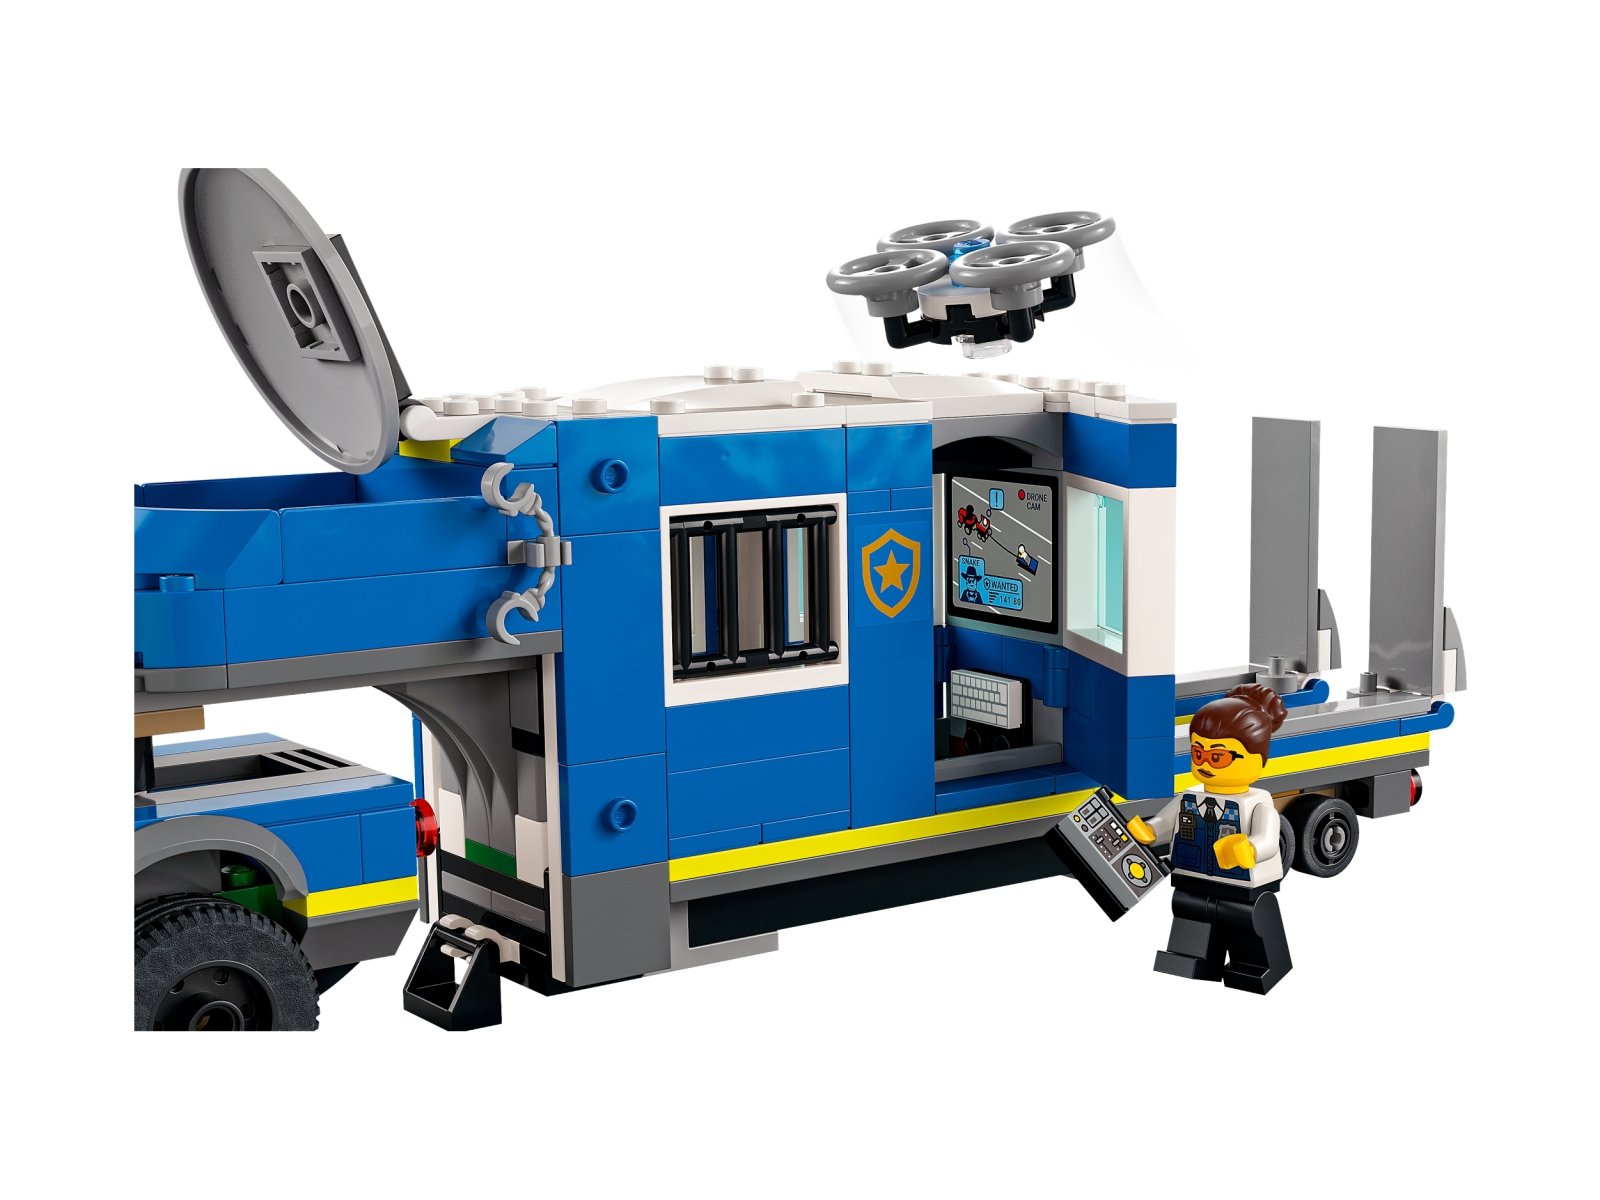 LEGO City 60315 Mobilne centrum dowodzenia policji